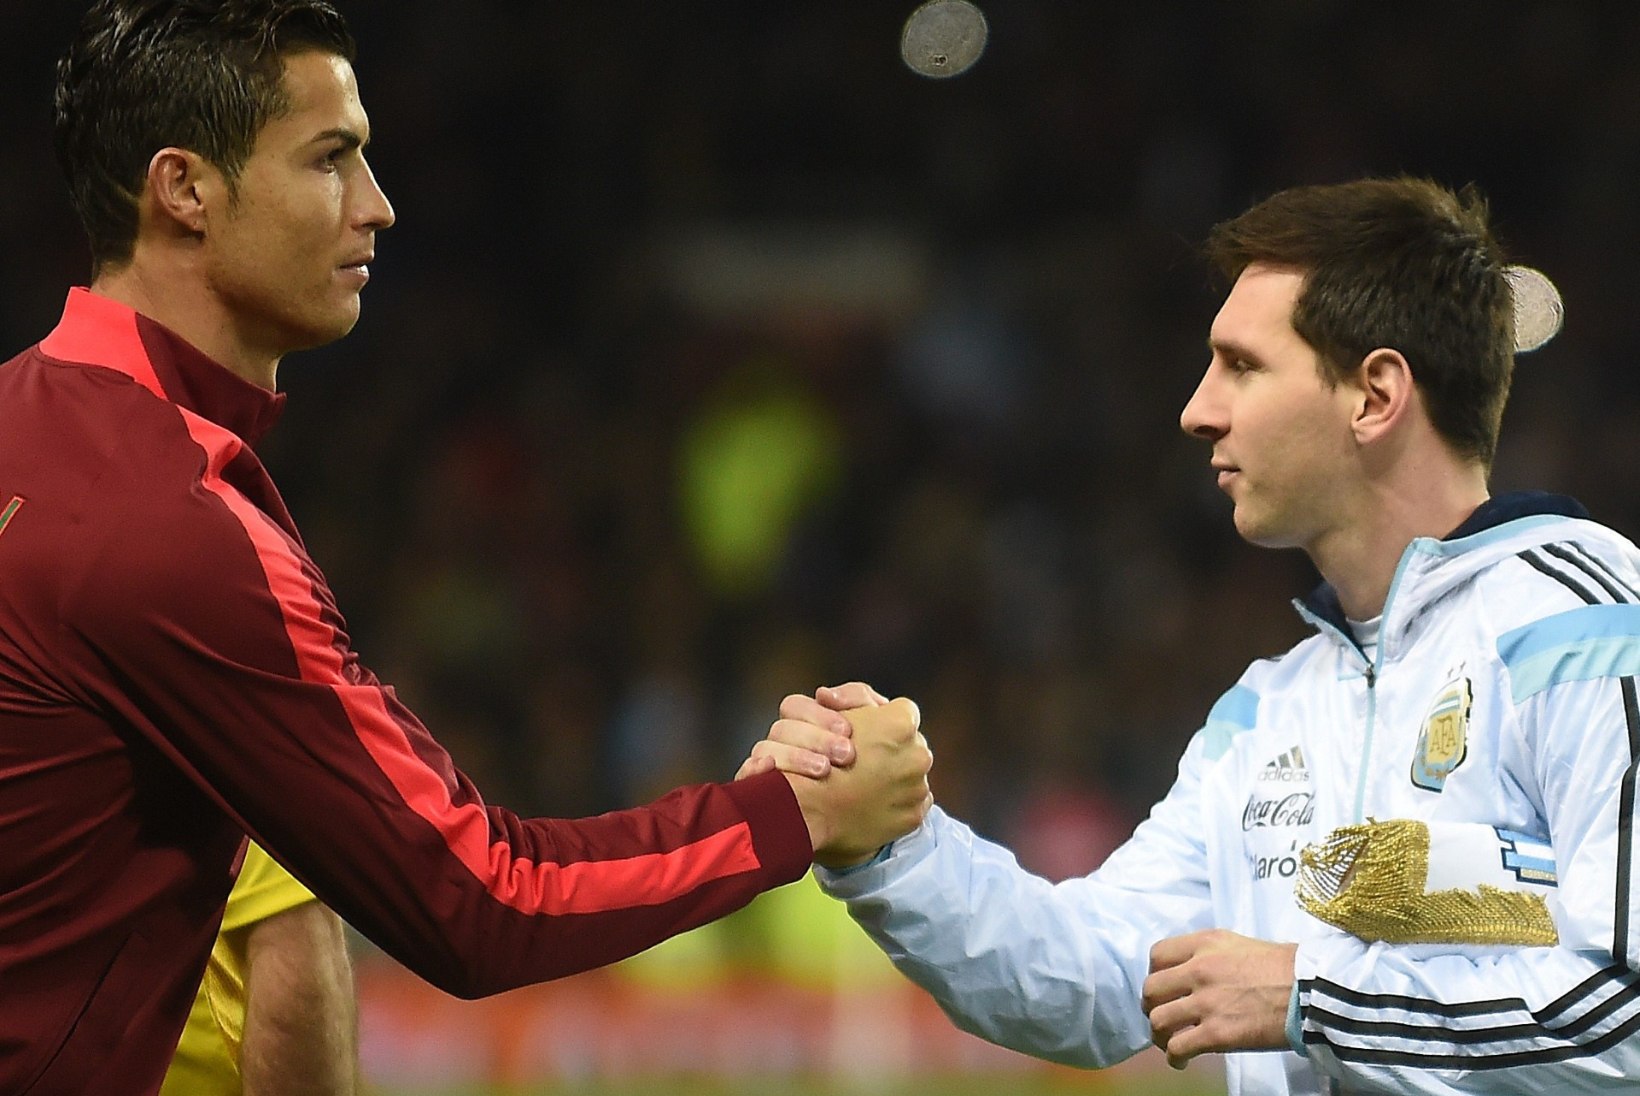 ÕHTULEHE VIDEO | 1 küsimus Nõmme Kaljule: Ronaldo või Messi?